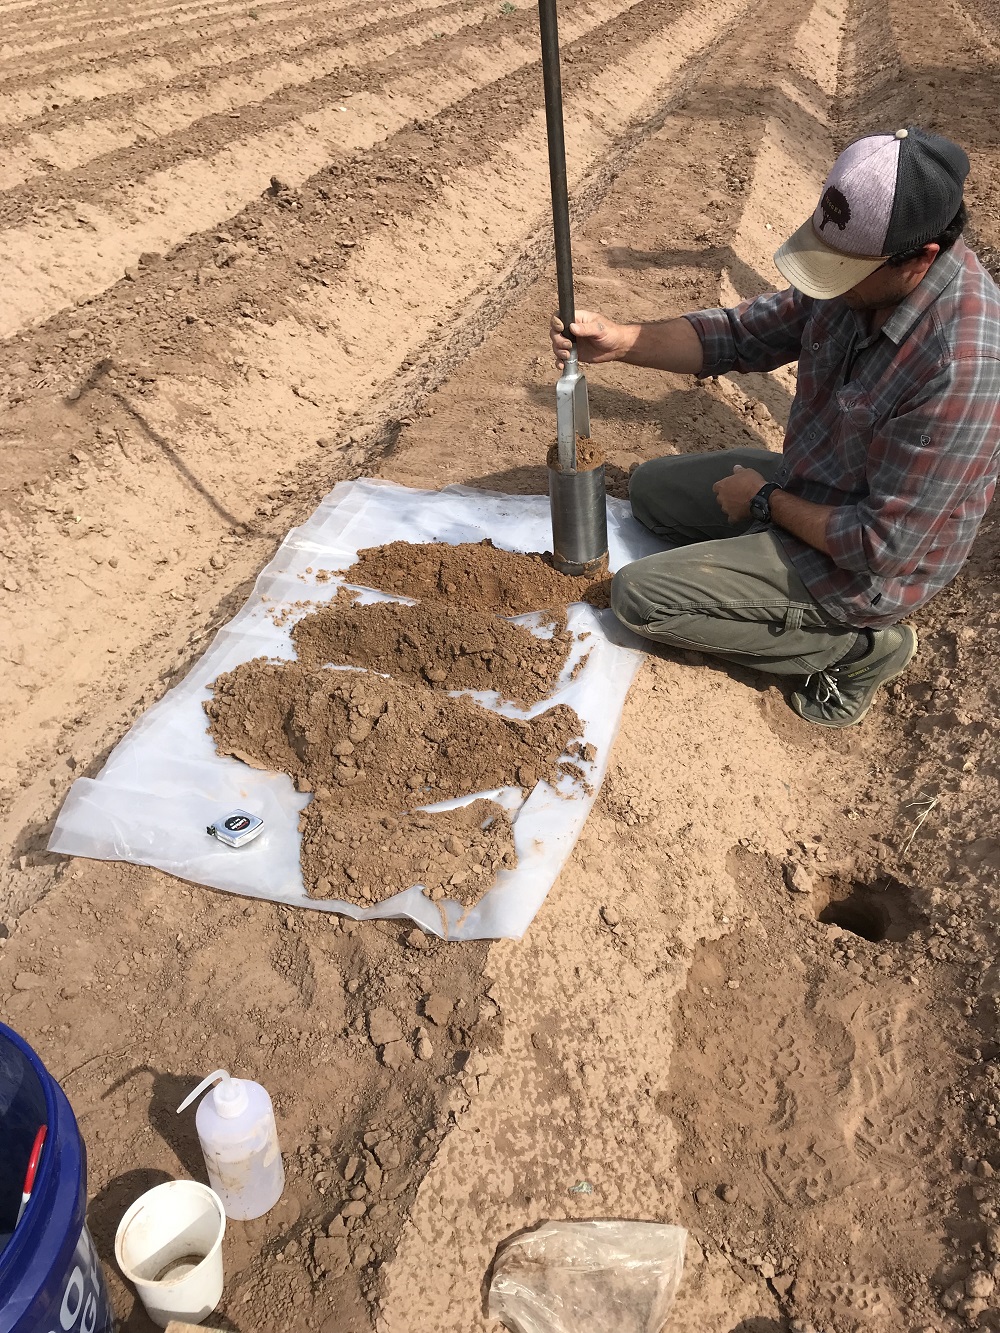 Un hombre se arrodilla en un campo de cultivo desnudo mientras recolecta muestras de suelo con un gran instrumento de plata.